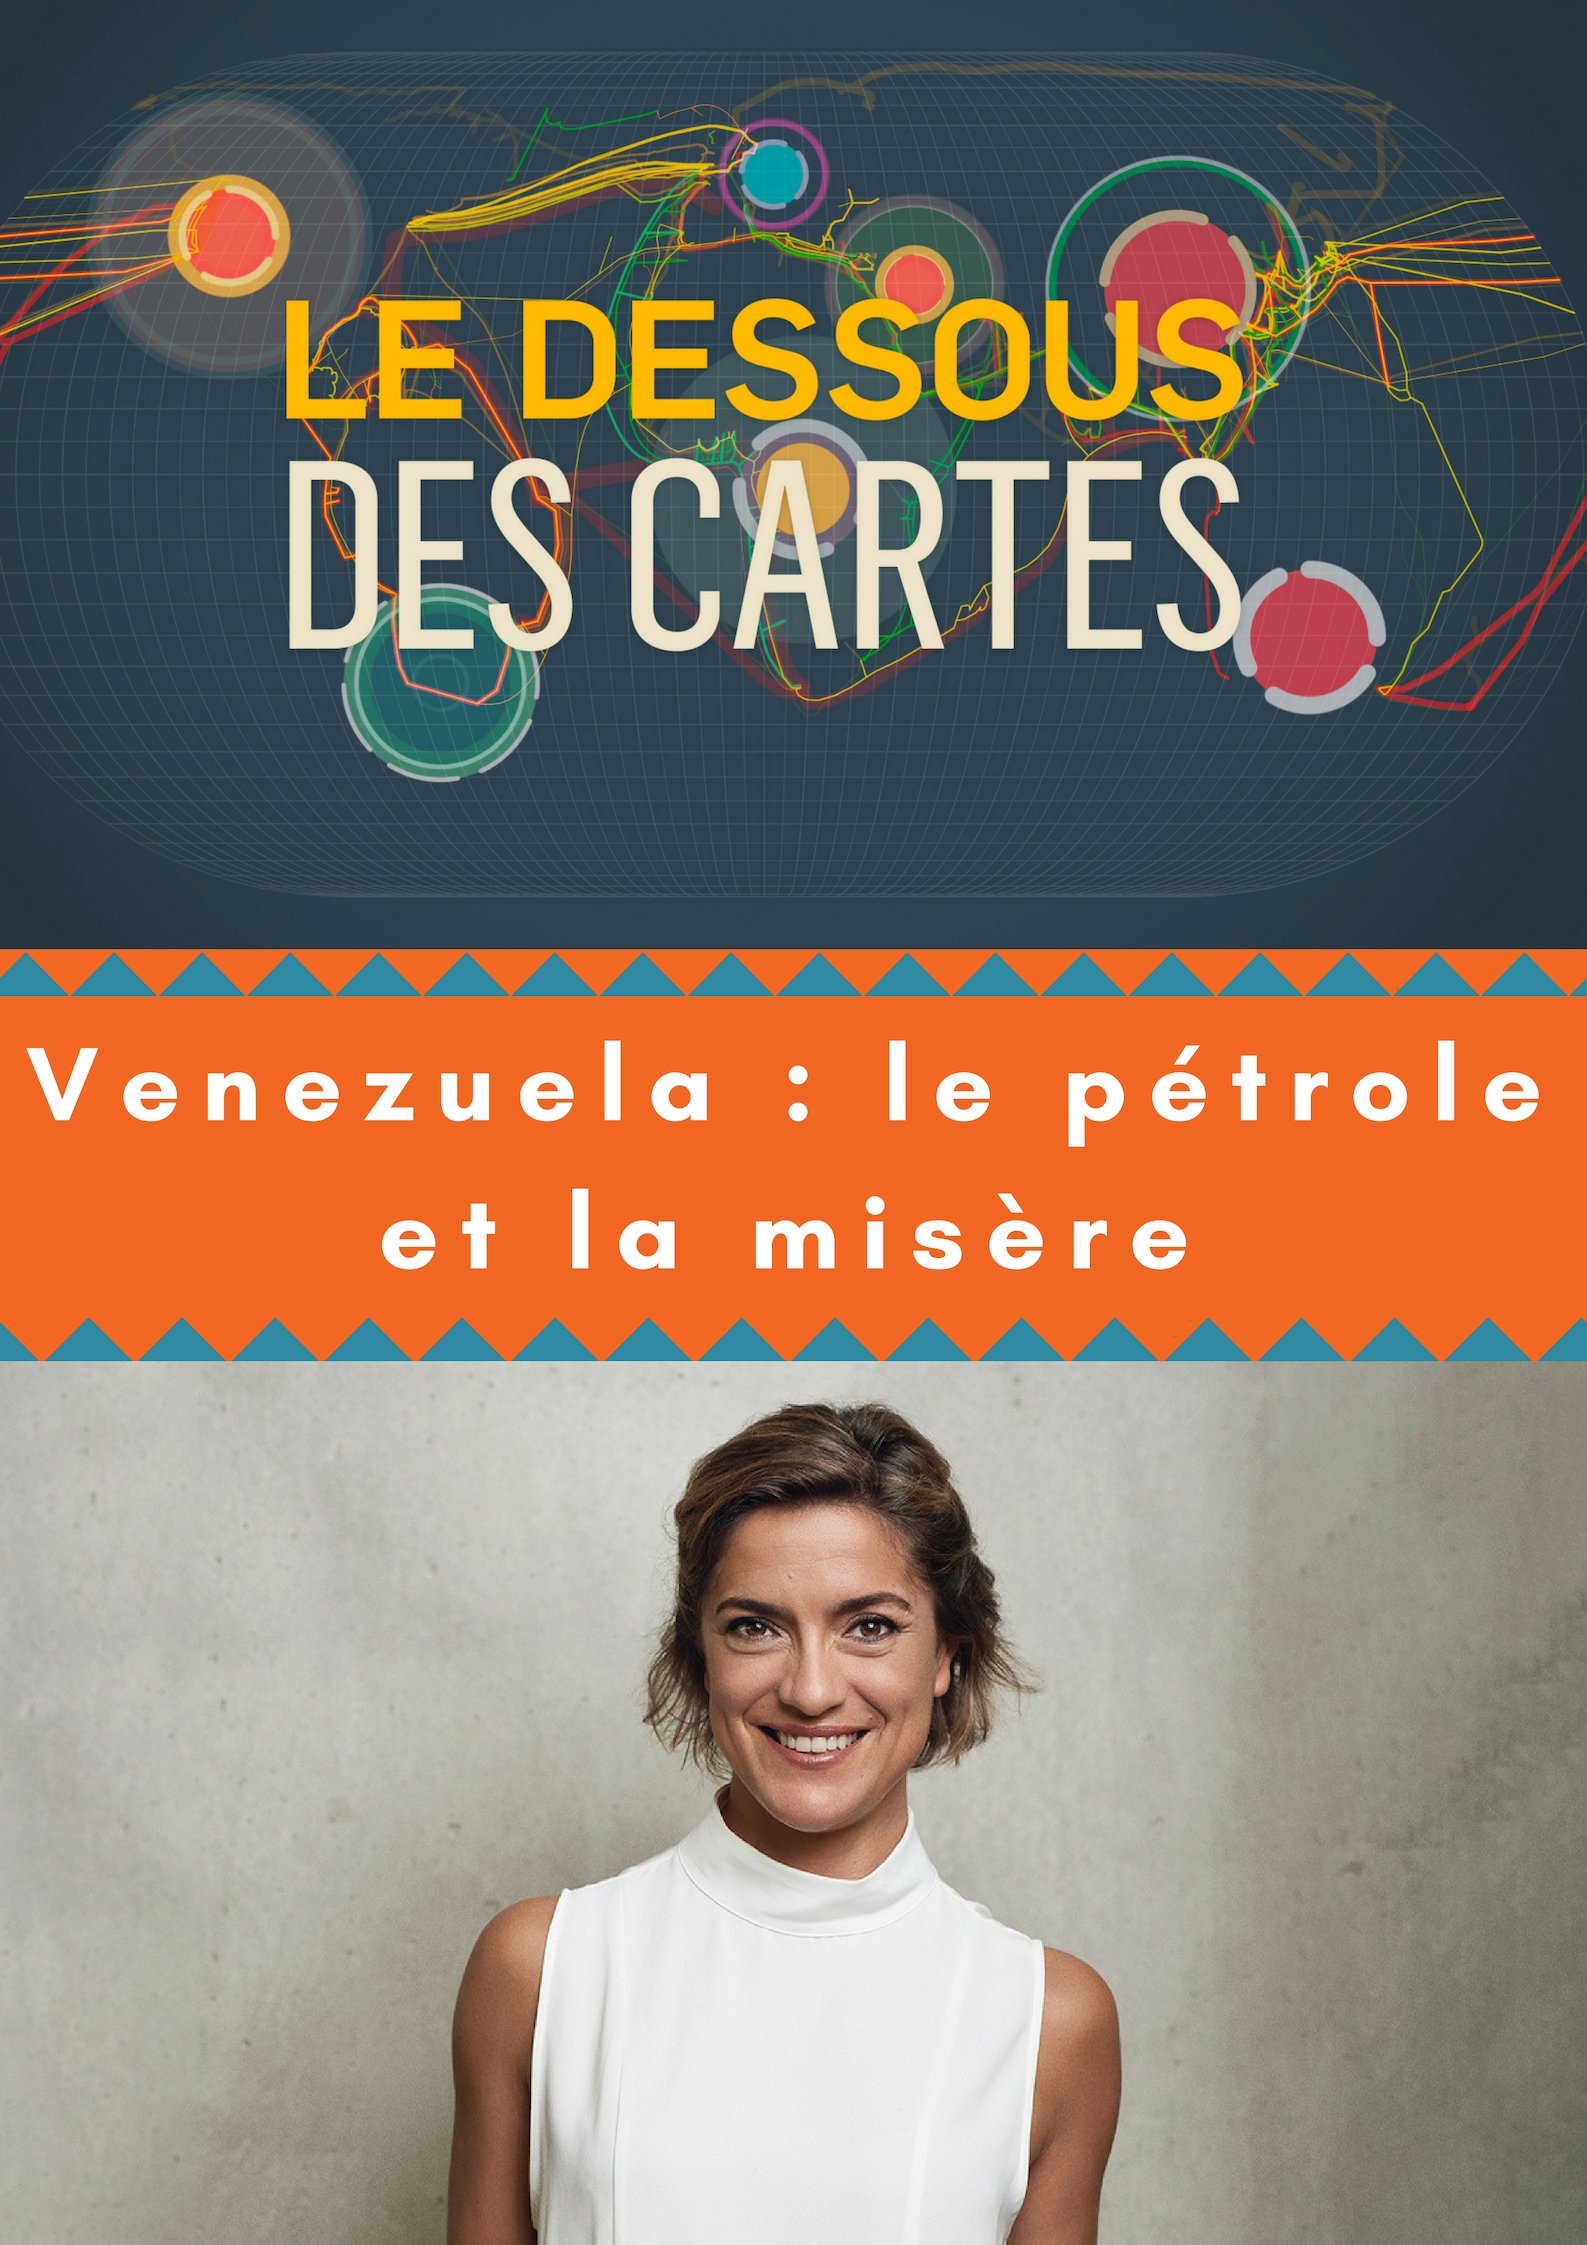 Le Dessous des cartes - Venezuela : le pétrole et la misère